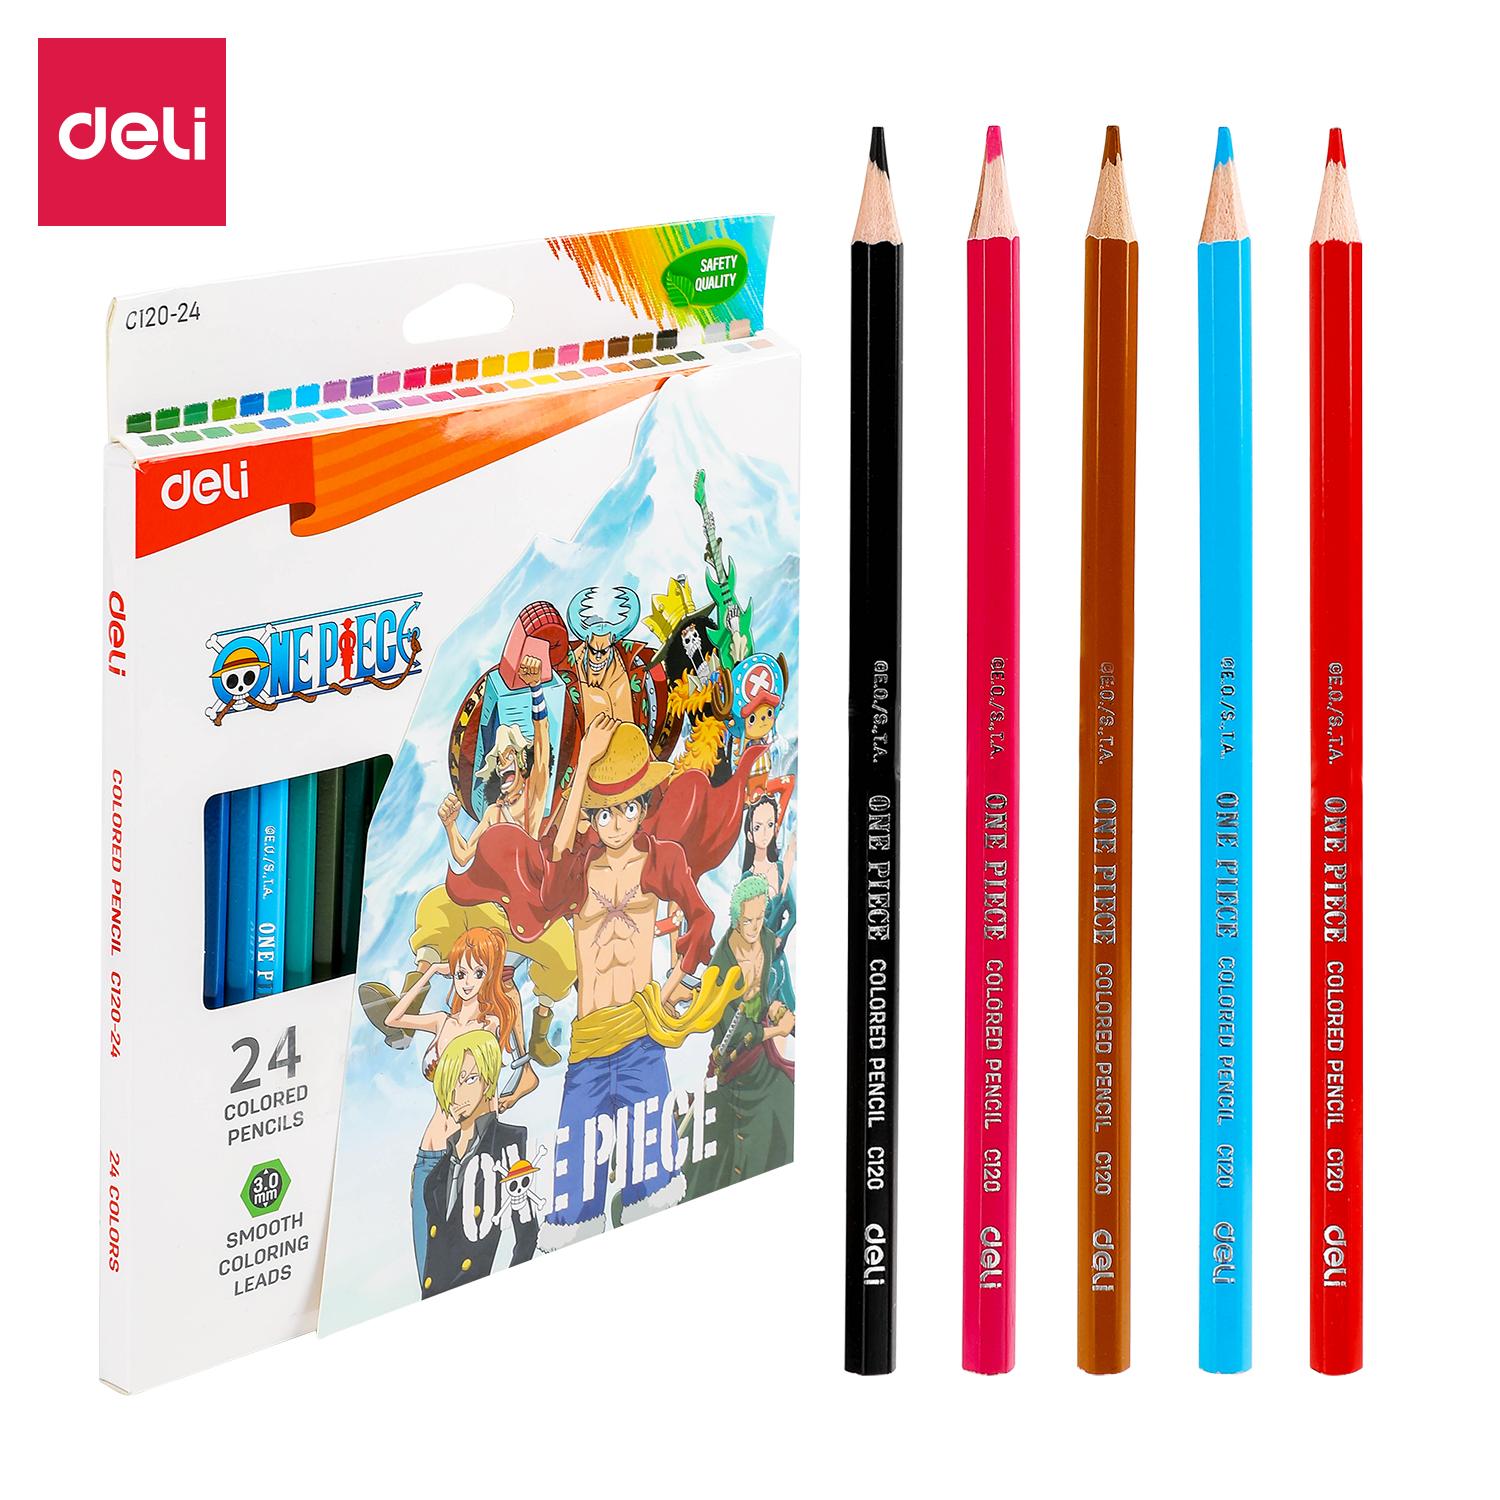 Deli-EC120-24 Colored Pencil